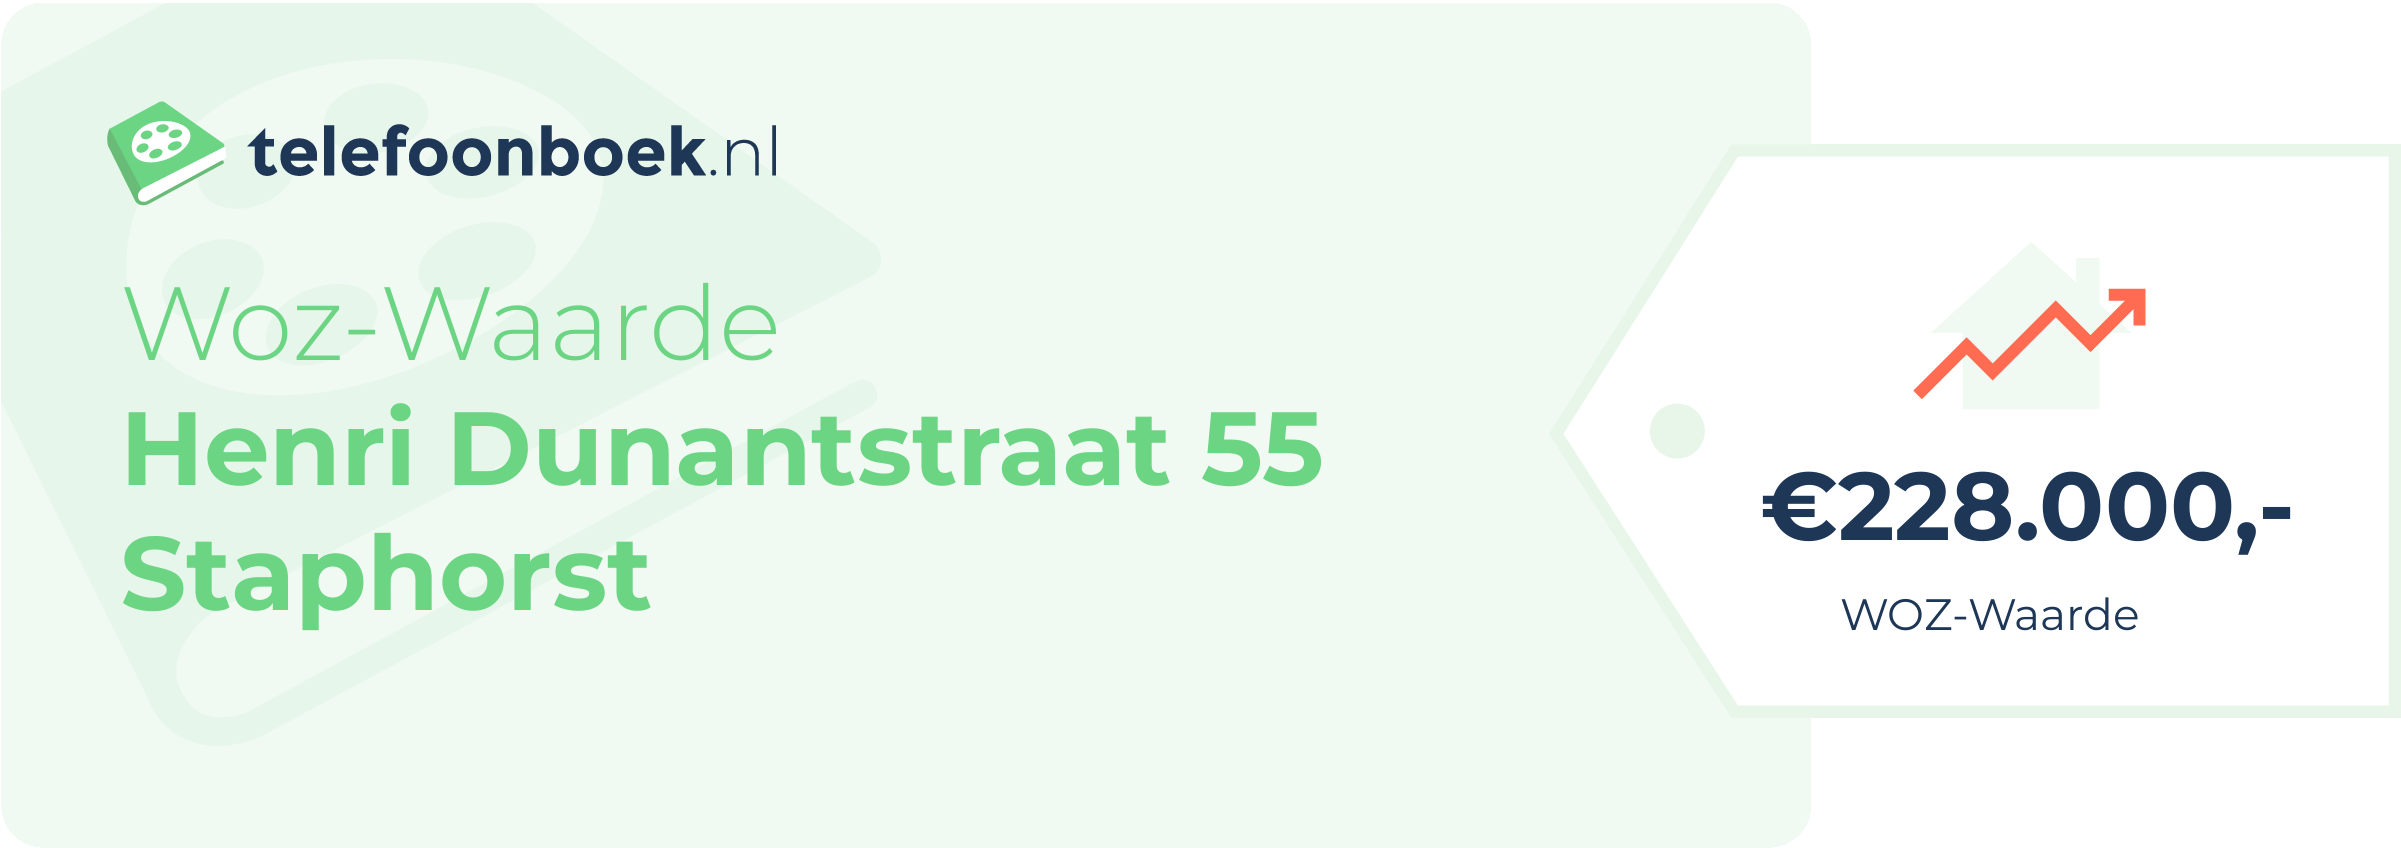 WOZ-waarde Henri Dunantstraat 55 Staphorst